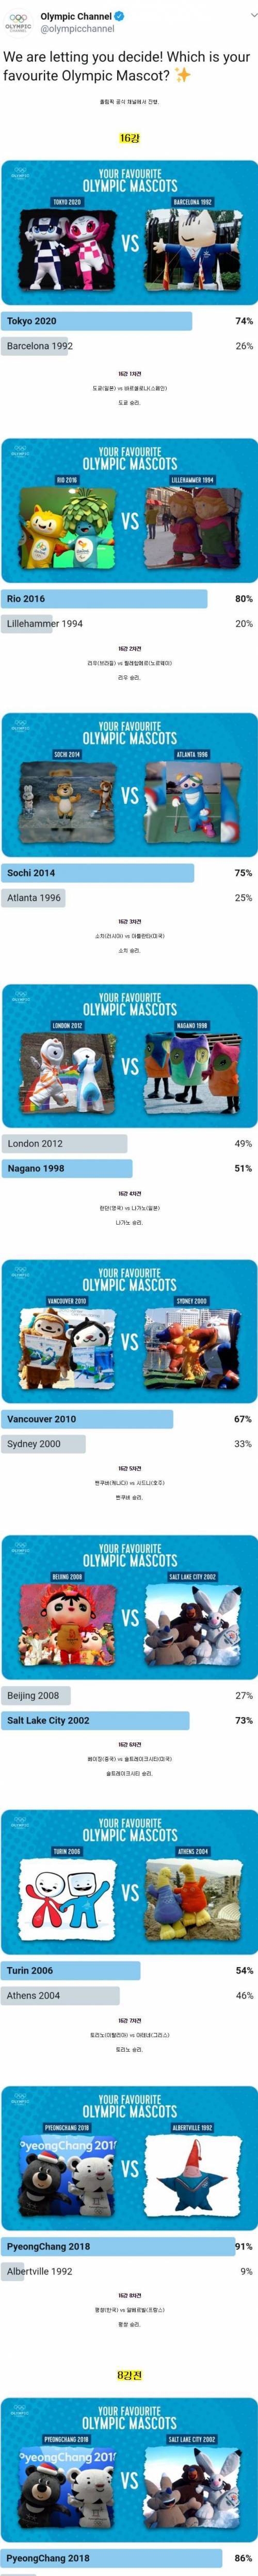 [스압] 역대 세계 올림픽 마스코트 인기투표 결과